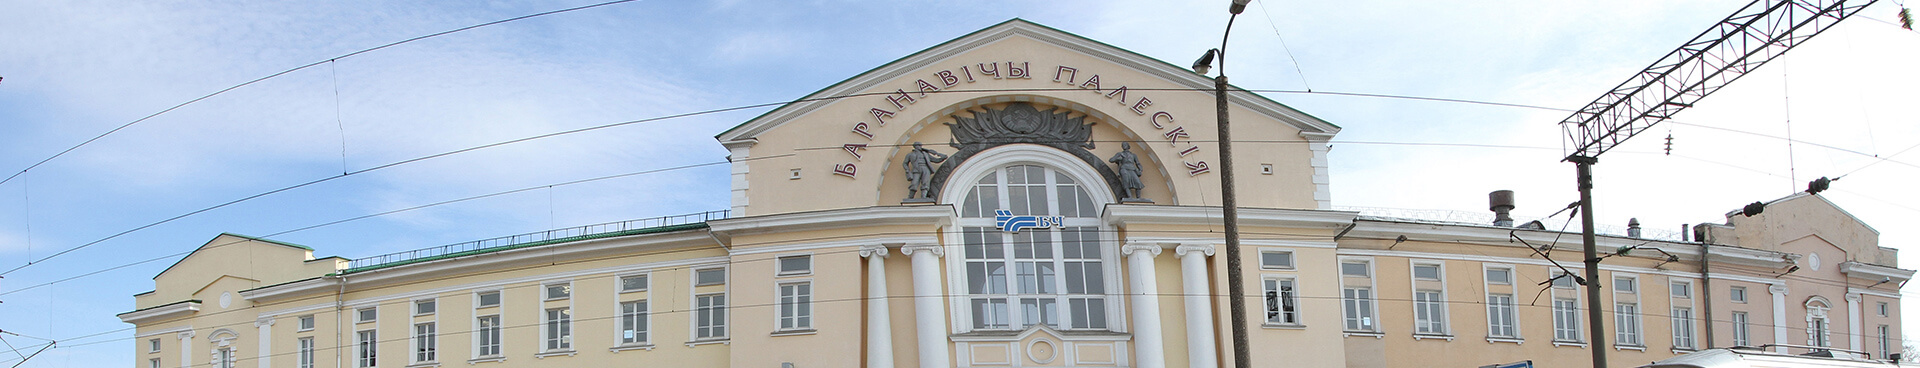 Baranavičy Palieskija Railway Station